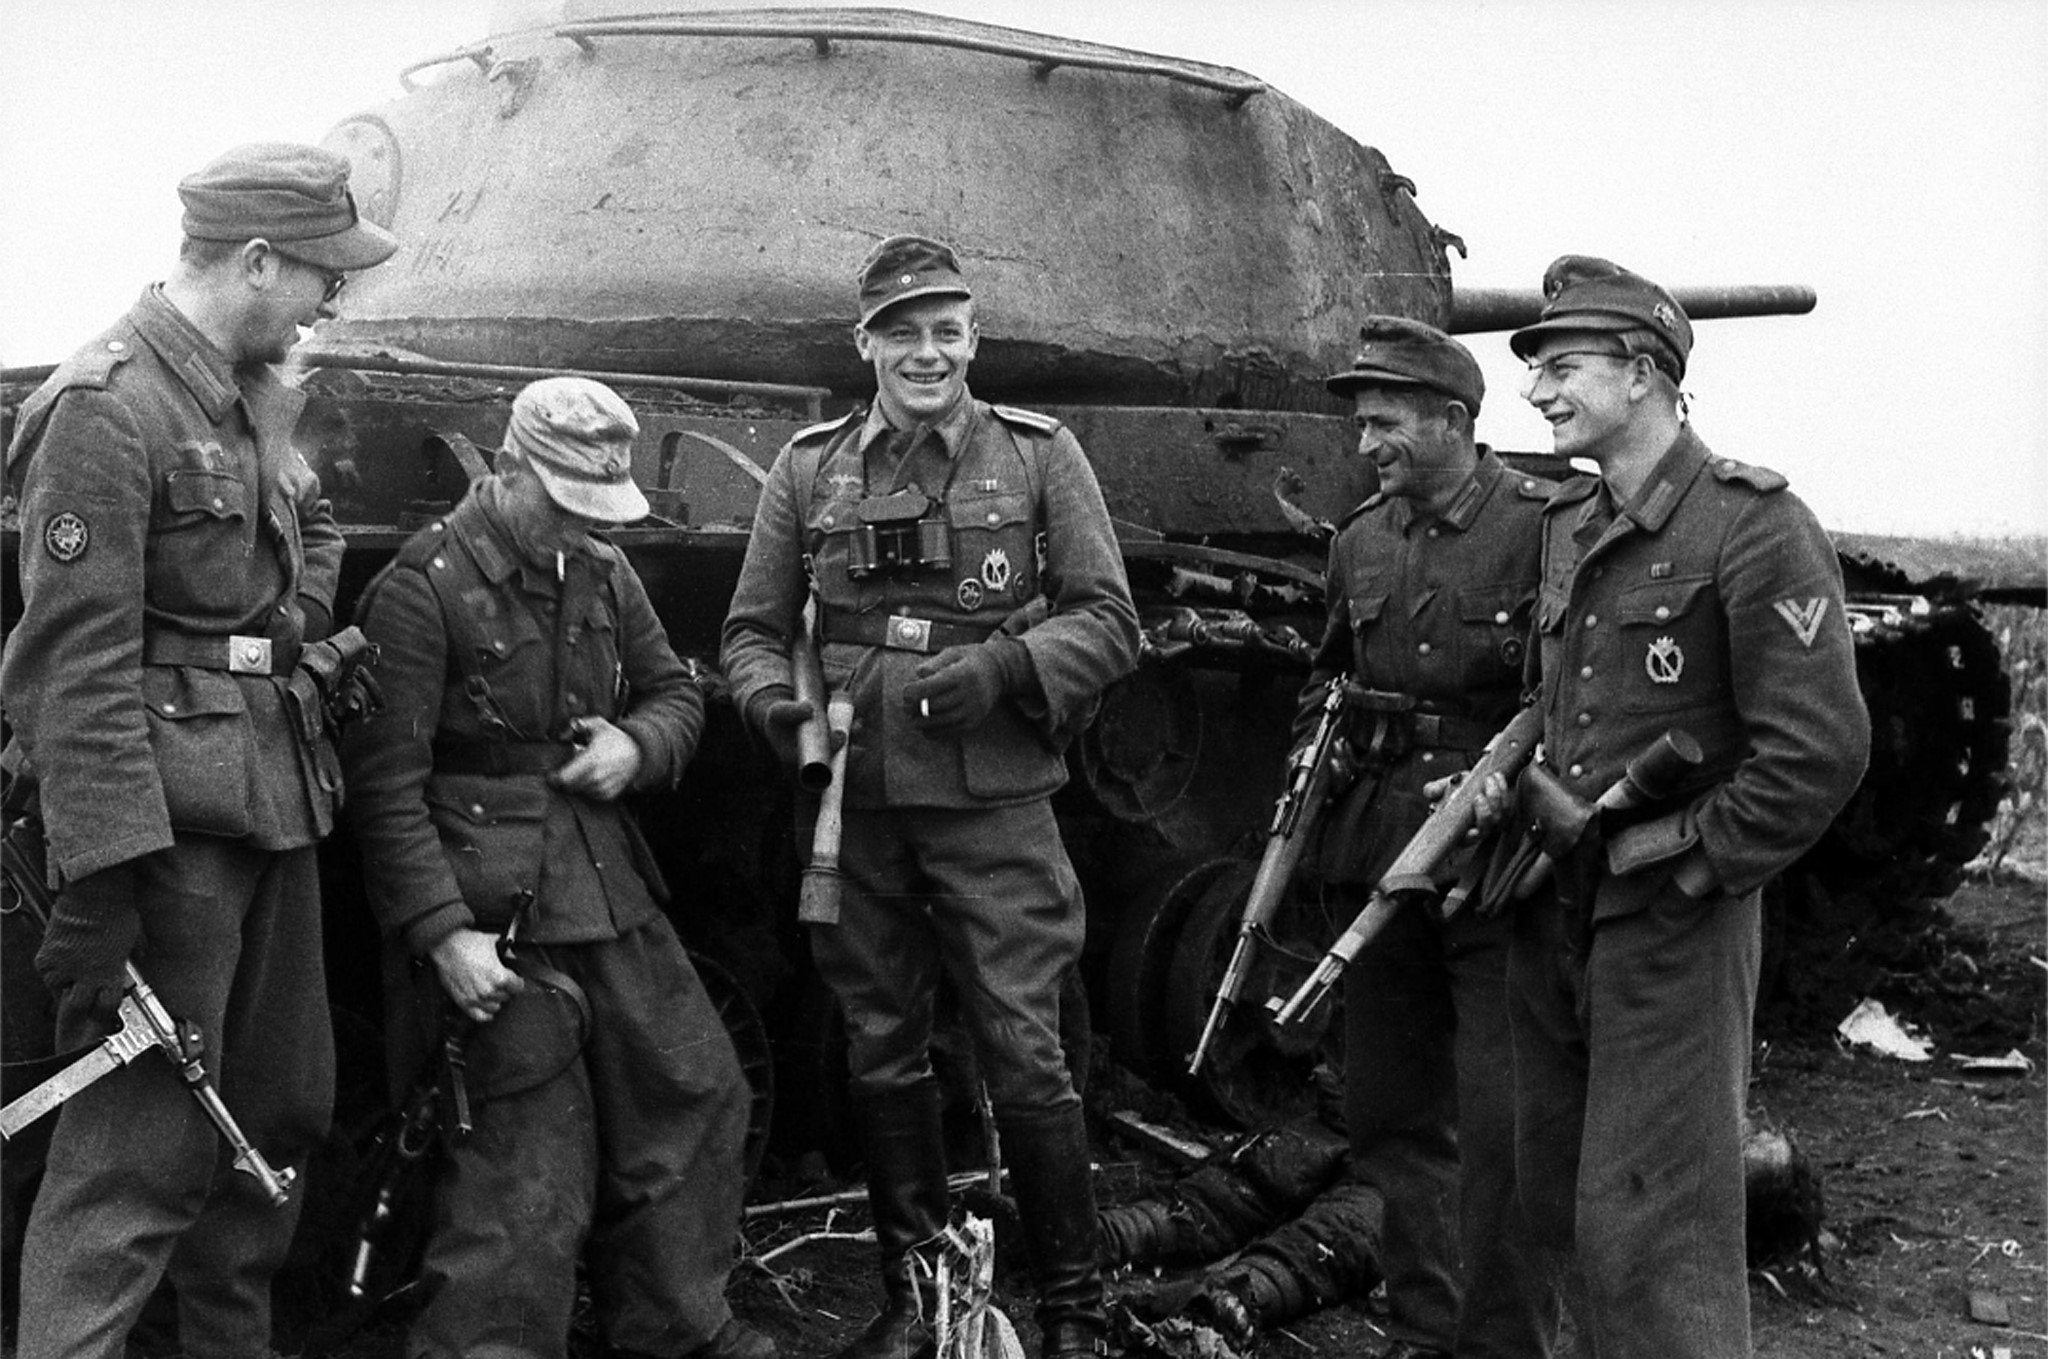 Военные сс. Солдаты вермахта 1943. Немецкие танкисты 2 мировой. Солдаты вермахта второй мировой войны. Немецкие солдаты СС второй мировой войны.